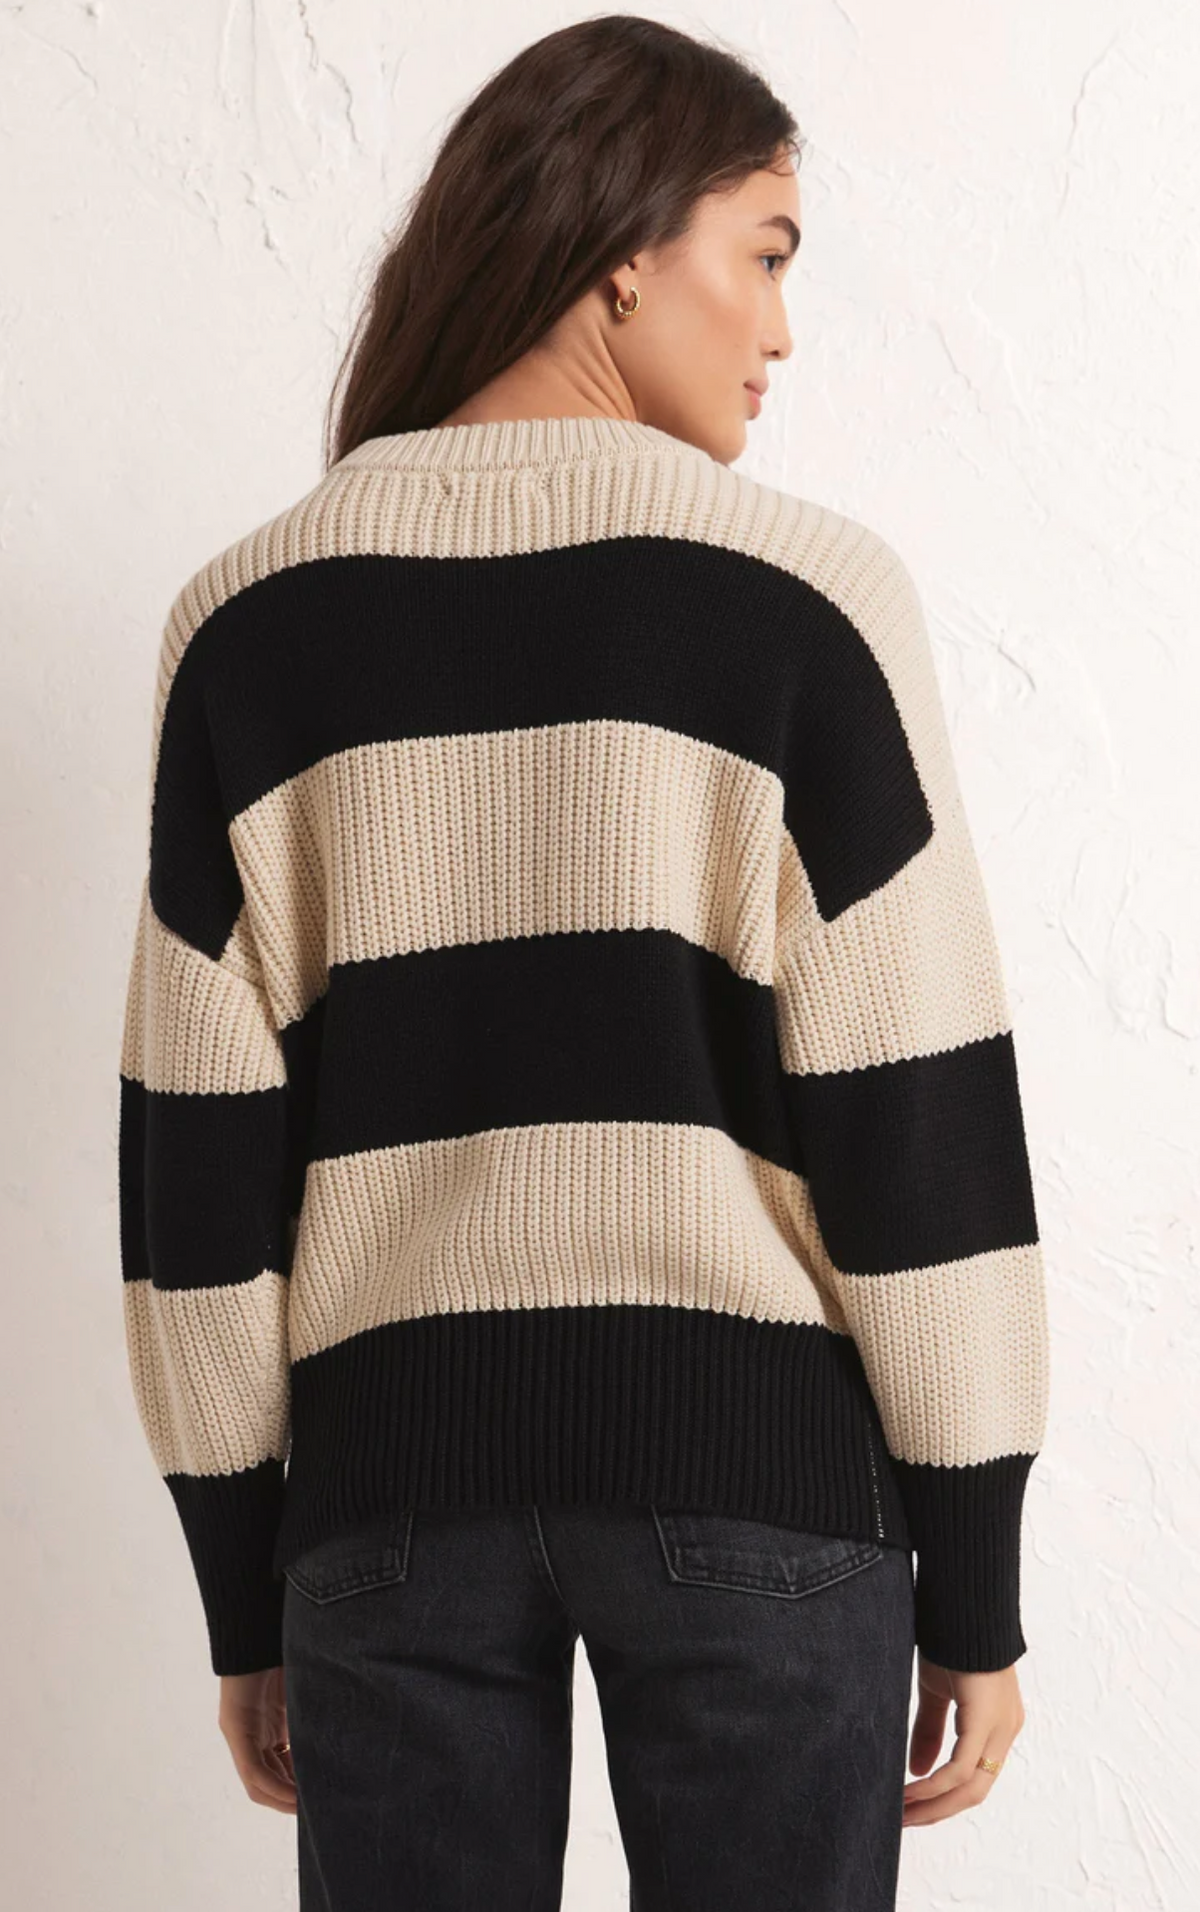 Z Supply Fresca Stripe Sweater in Black